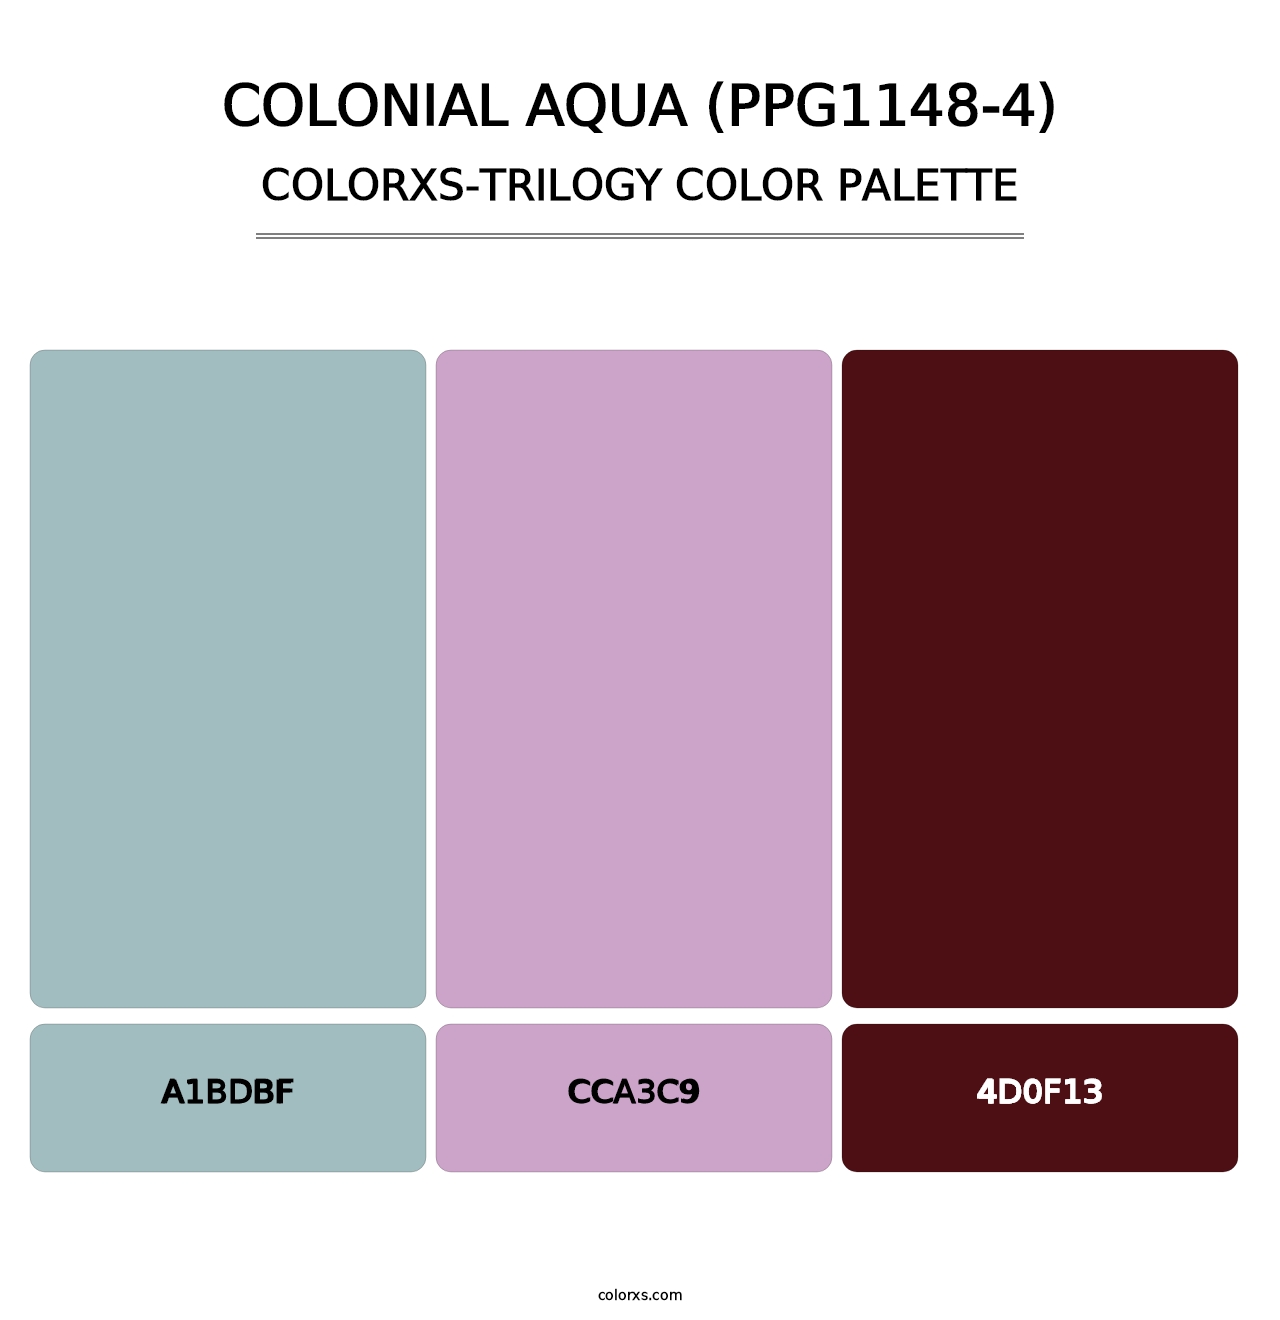 Colonial Aqua (PPG1148-4) - Colorxs Trilogy Palette